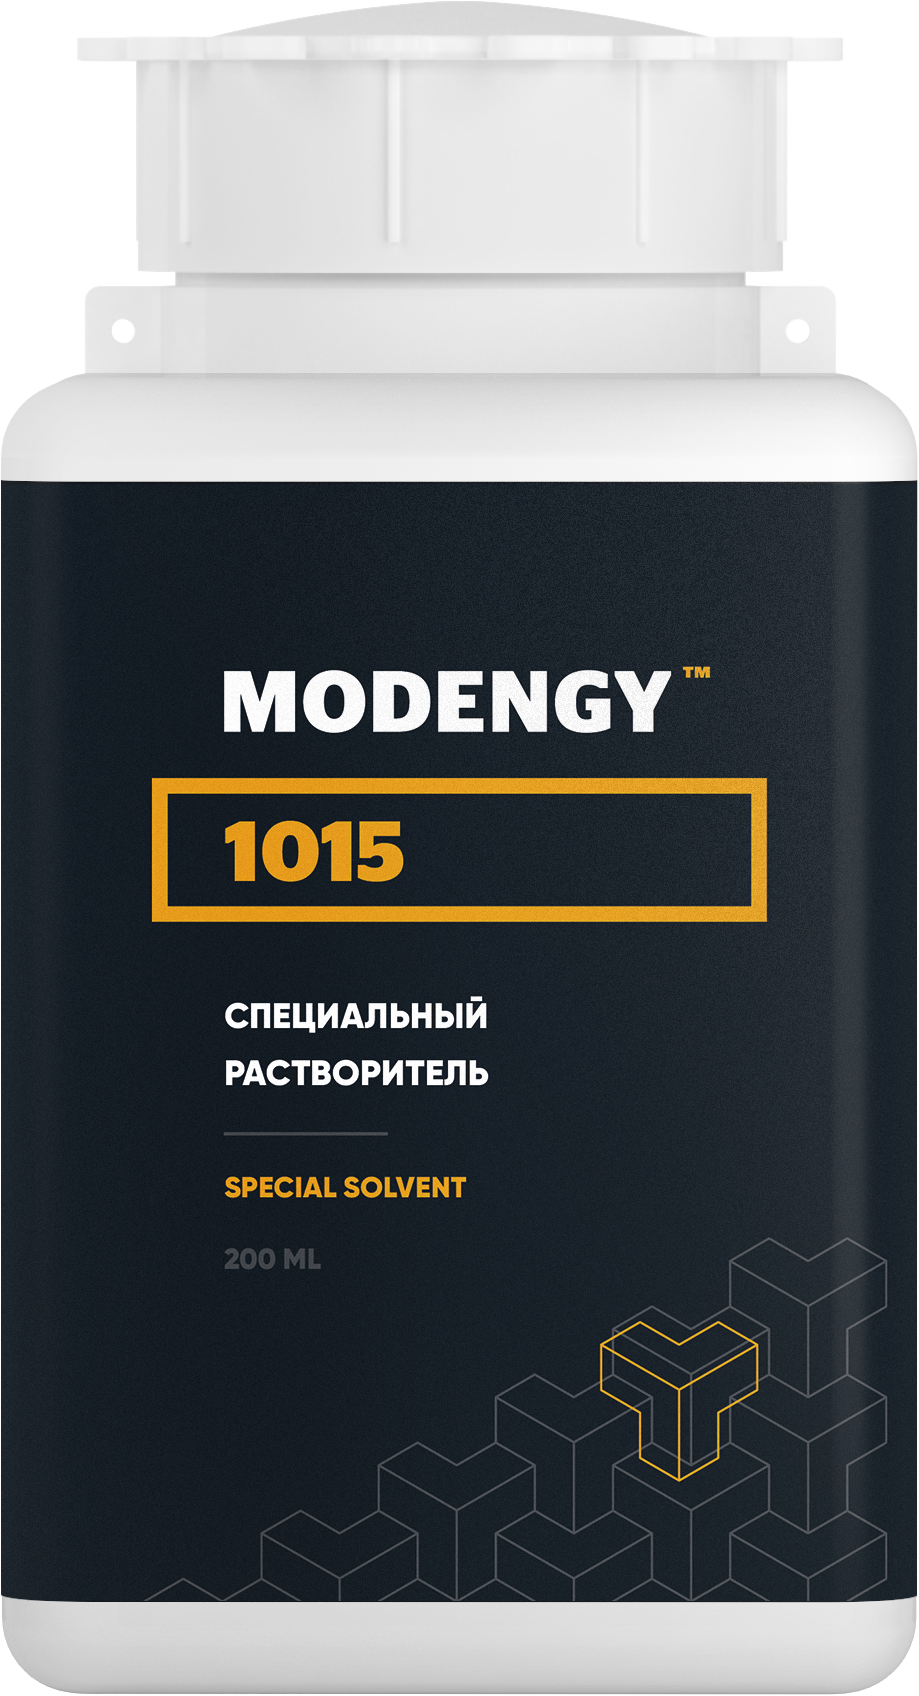 Специальный растворитель MODENGY 1015 (200 мл) специальный очиститель активатор modengy 4 5 л